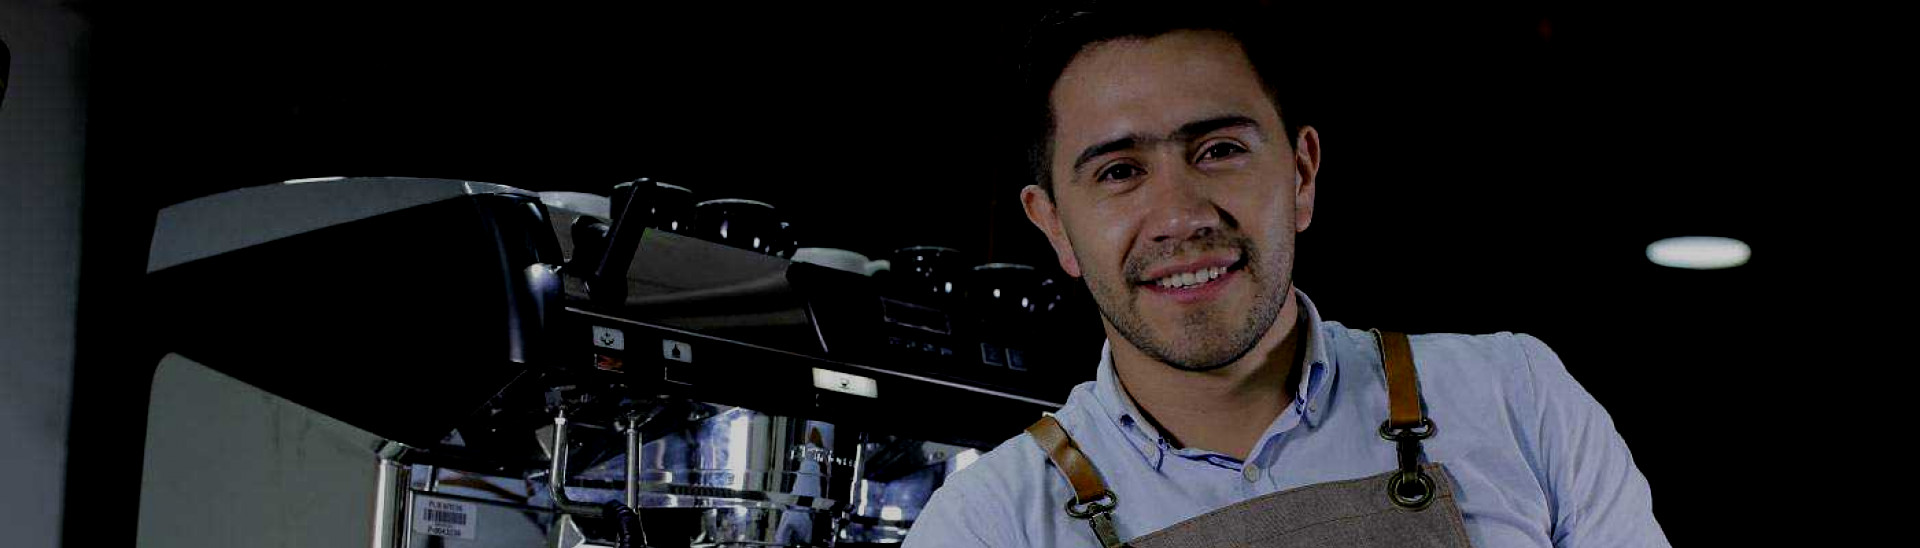 Ronald Valero el mejor barista de Colombia Estudiante de Administración de Empresas EAN